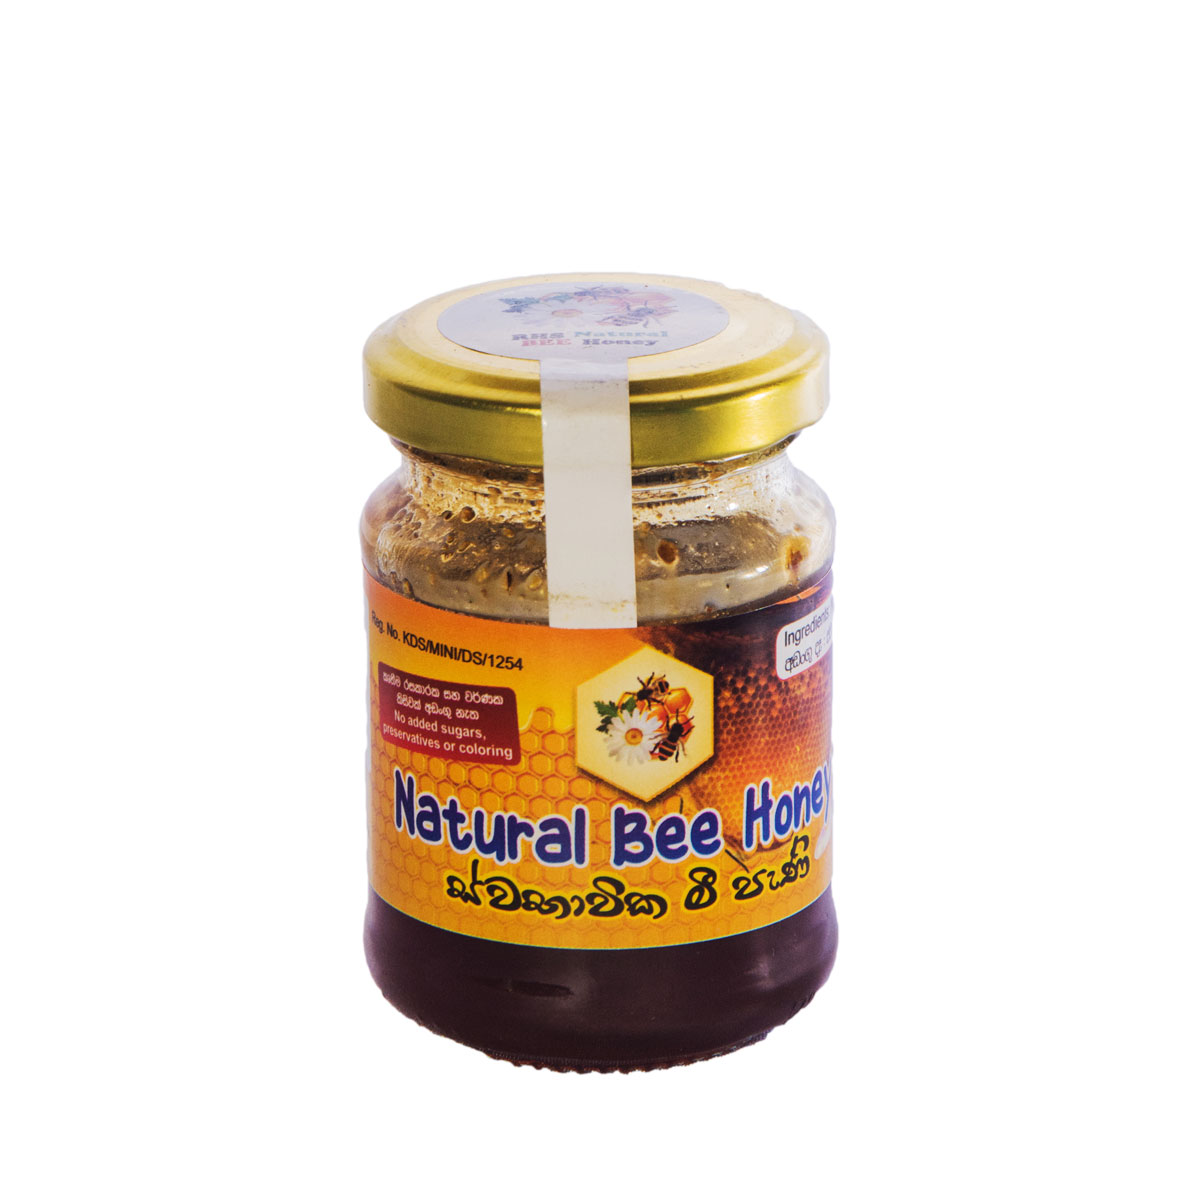 Natural bee honey